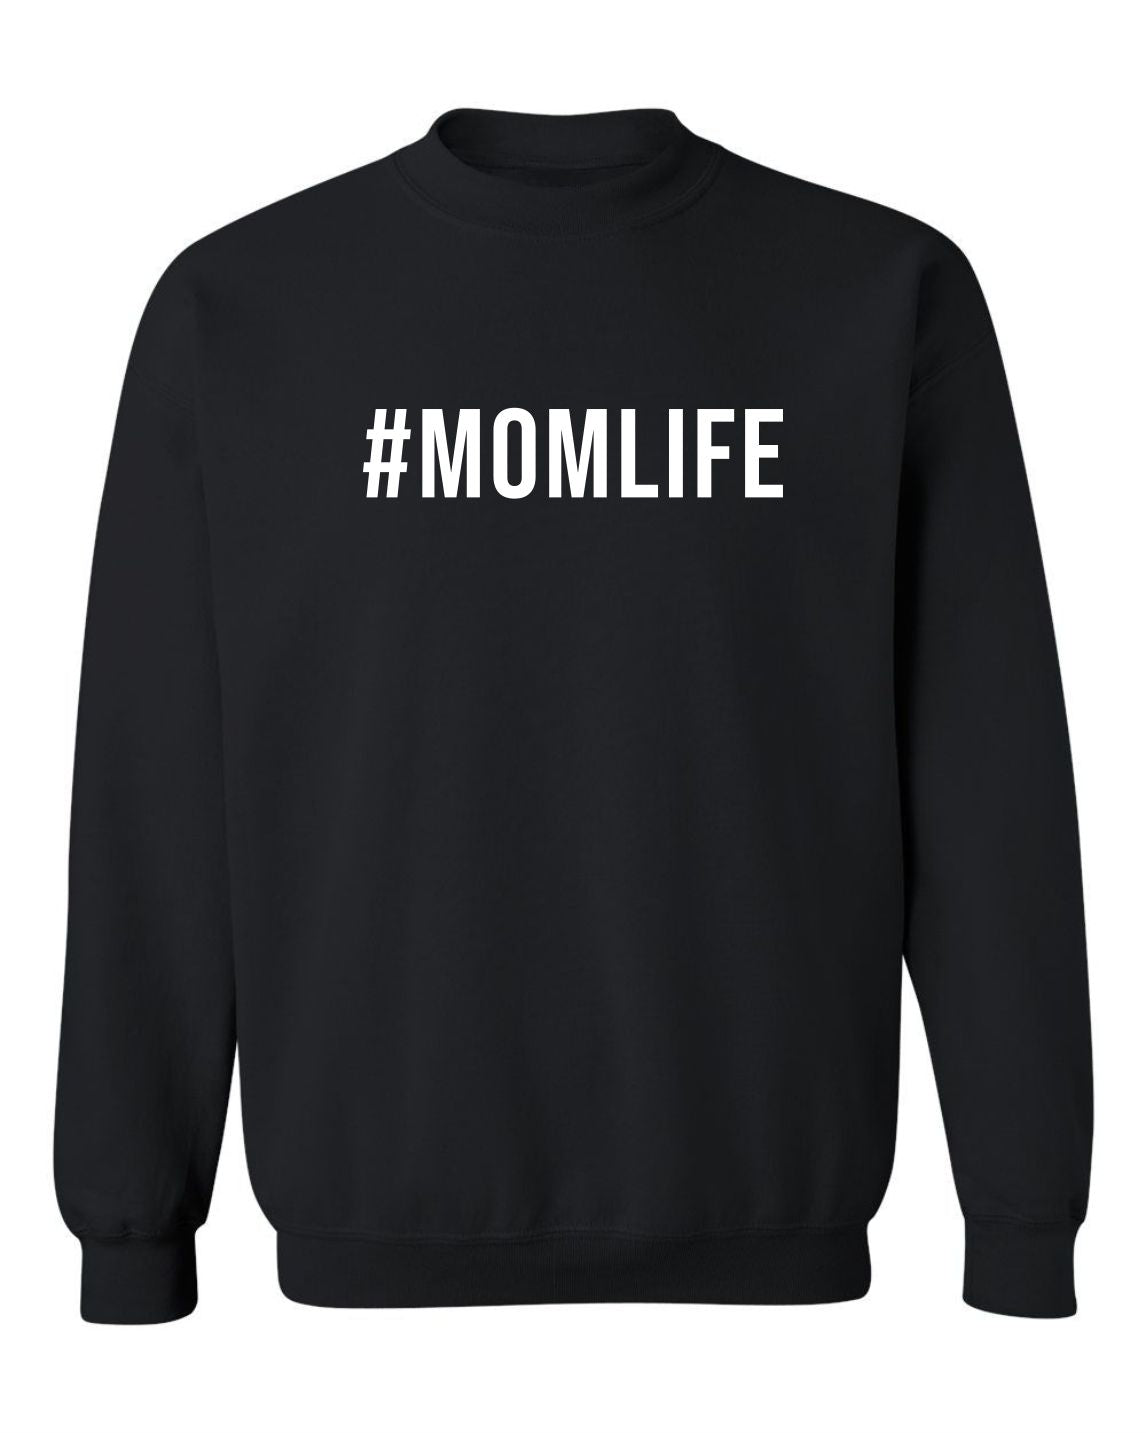 "#MOMLIFE" Unisex Crewneck Sweatshirt